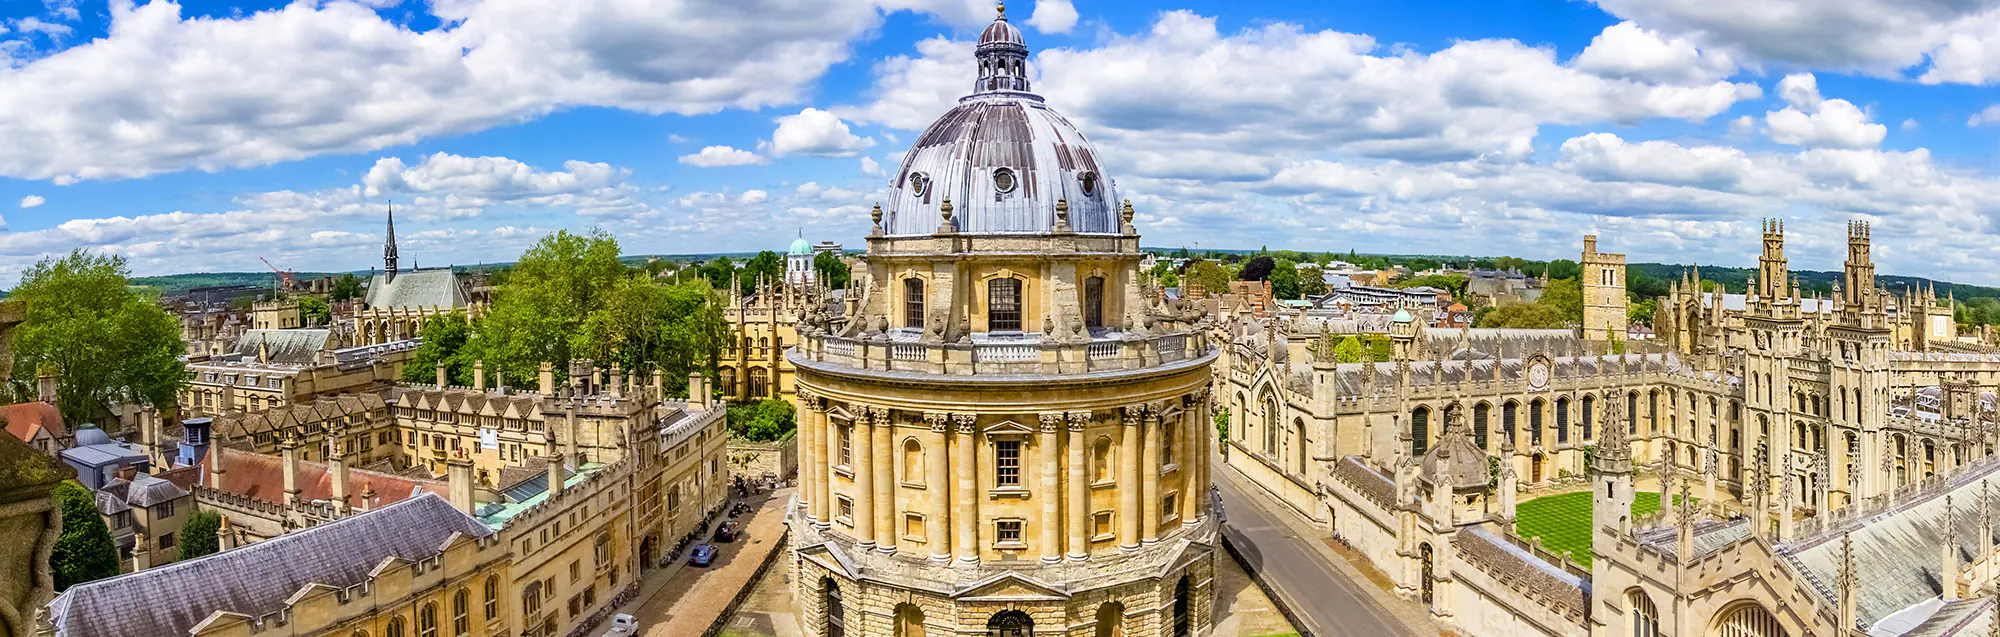 Liste der Sprachschulen in Oxford für Erwachsene und Jugendliche